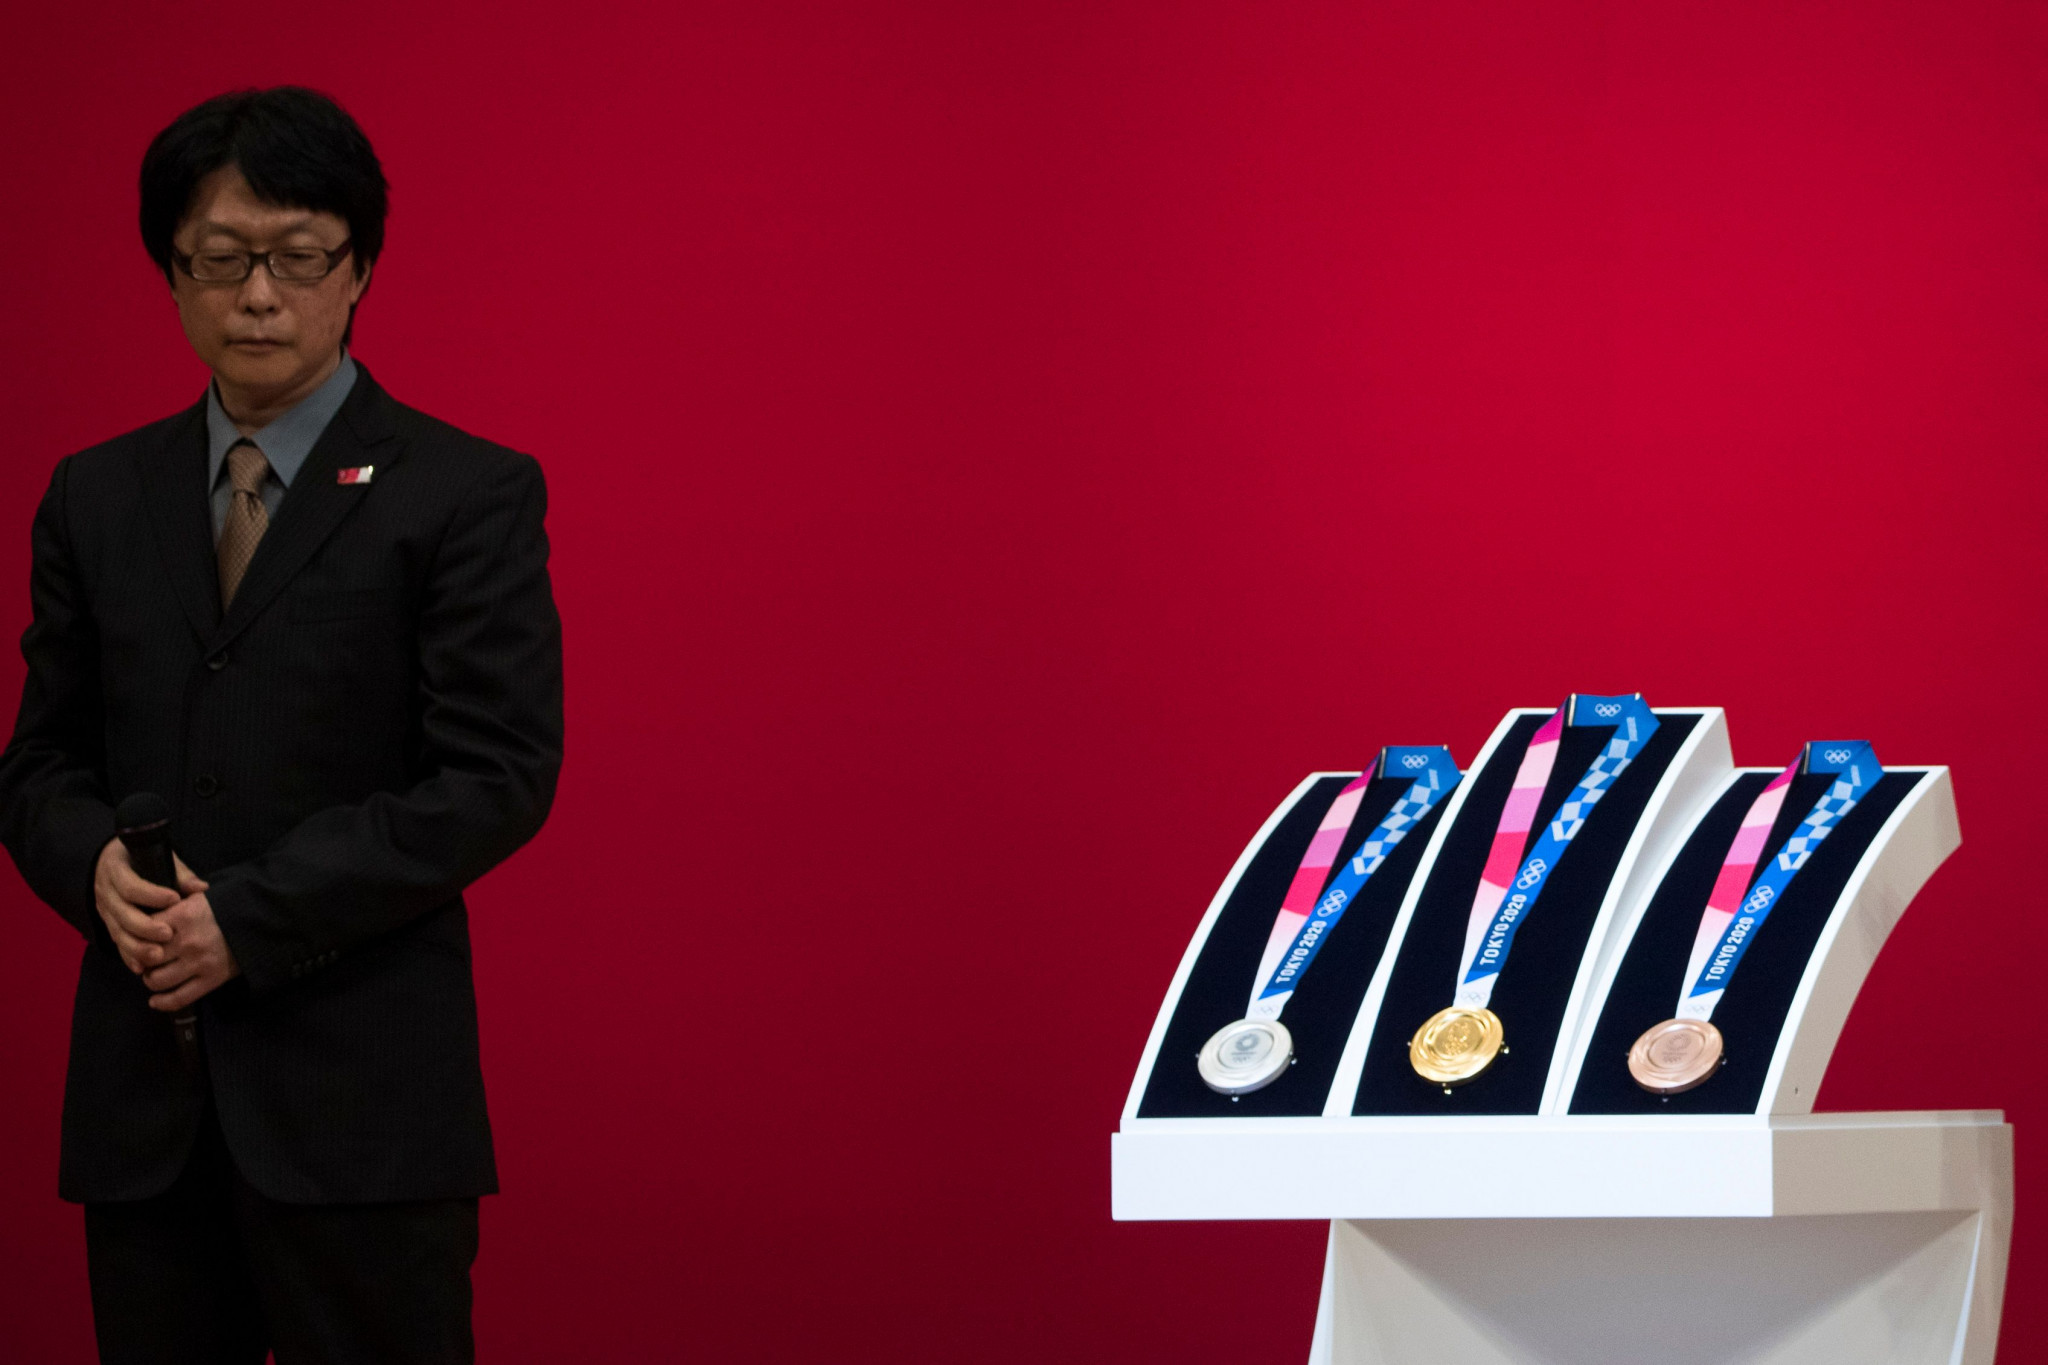 Tokyo 2020 Olympic medal designer explains concept